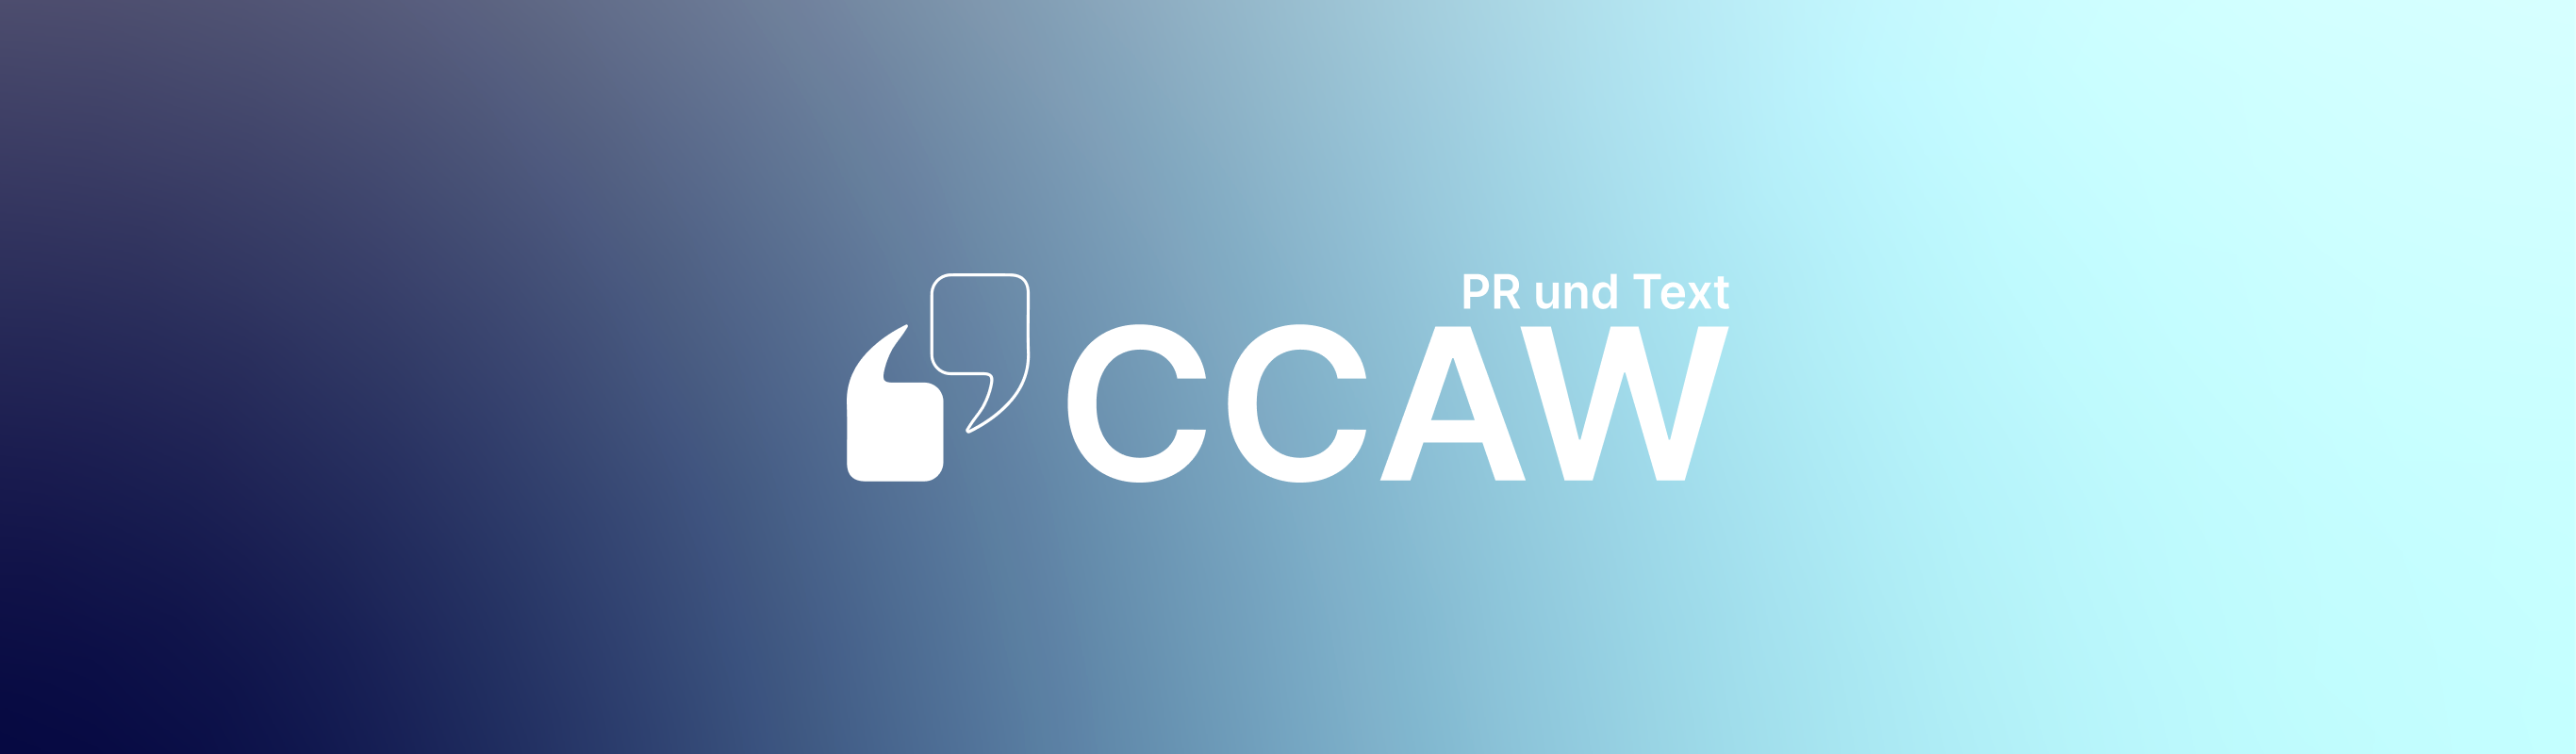 CCAW Website 3